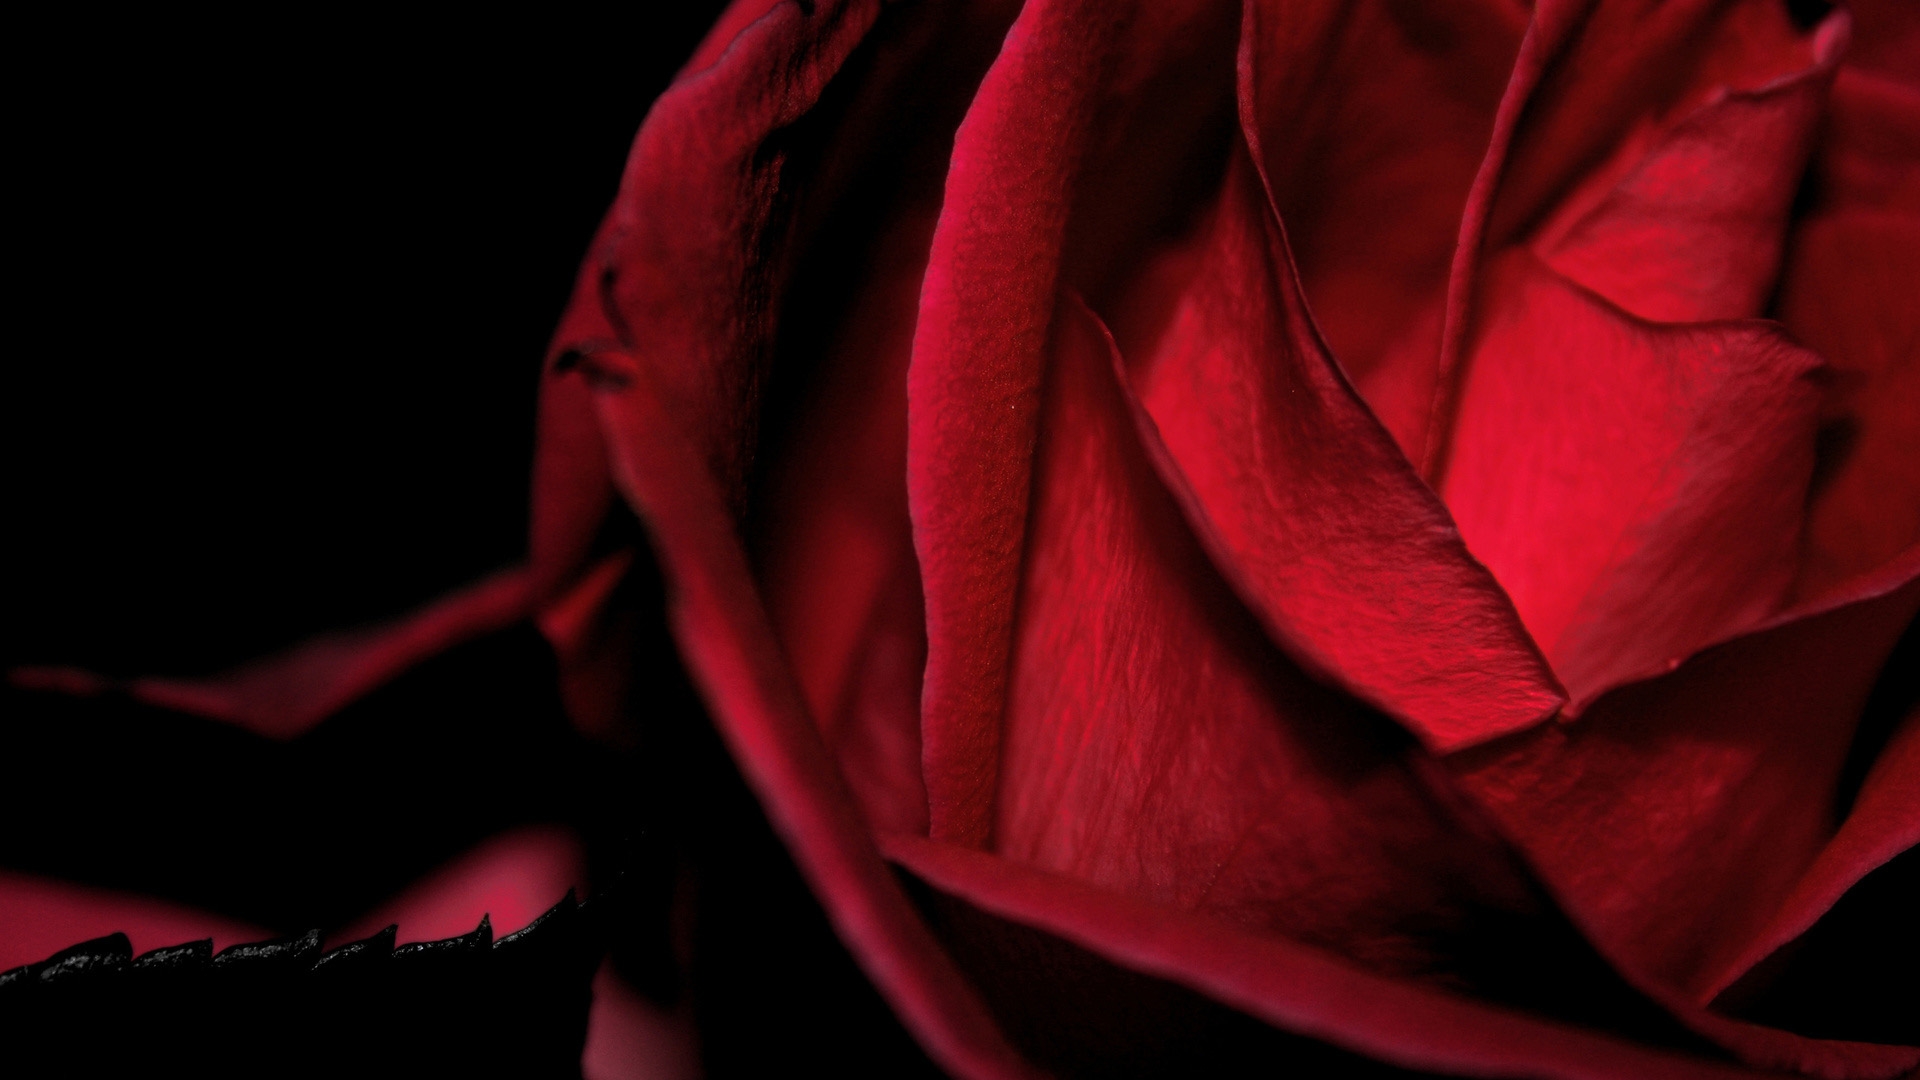 红玫瑰 玫瑰 玫瑰花 - Pixabay上的免费照片 - Pixabay